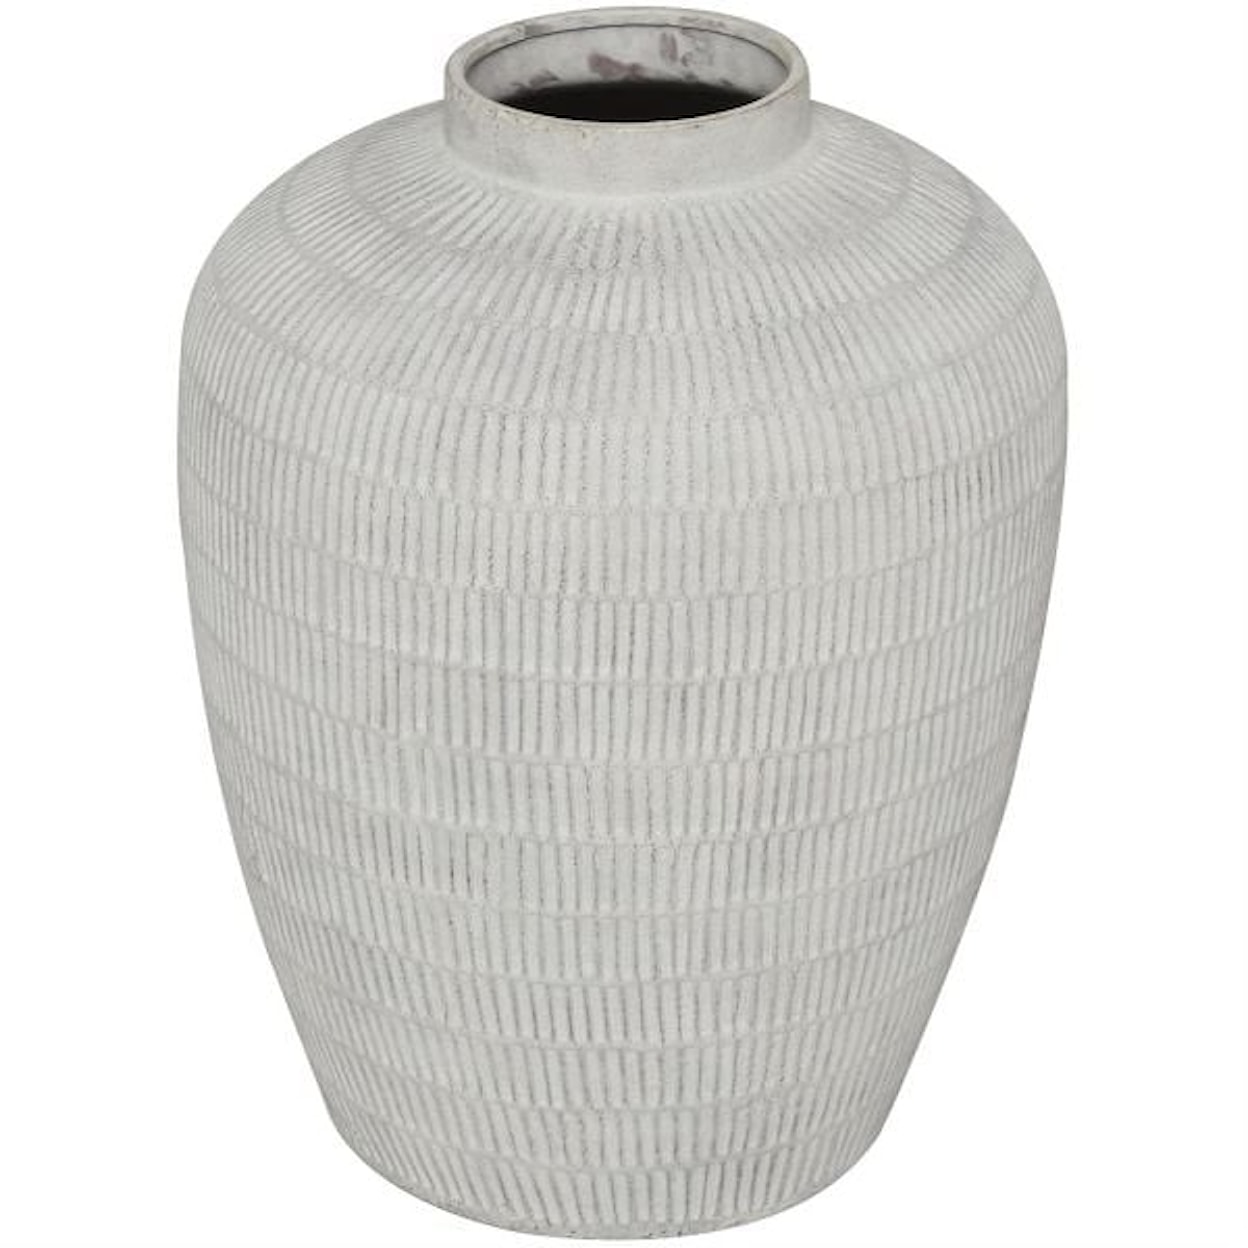 UMA Enterprises, Inc. Vase Ceramic Vase